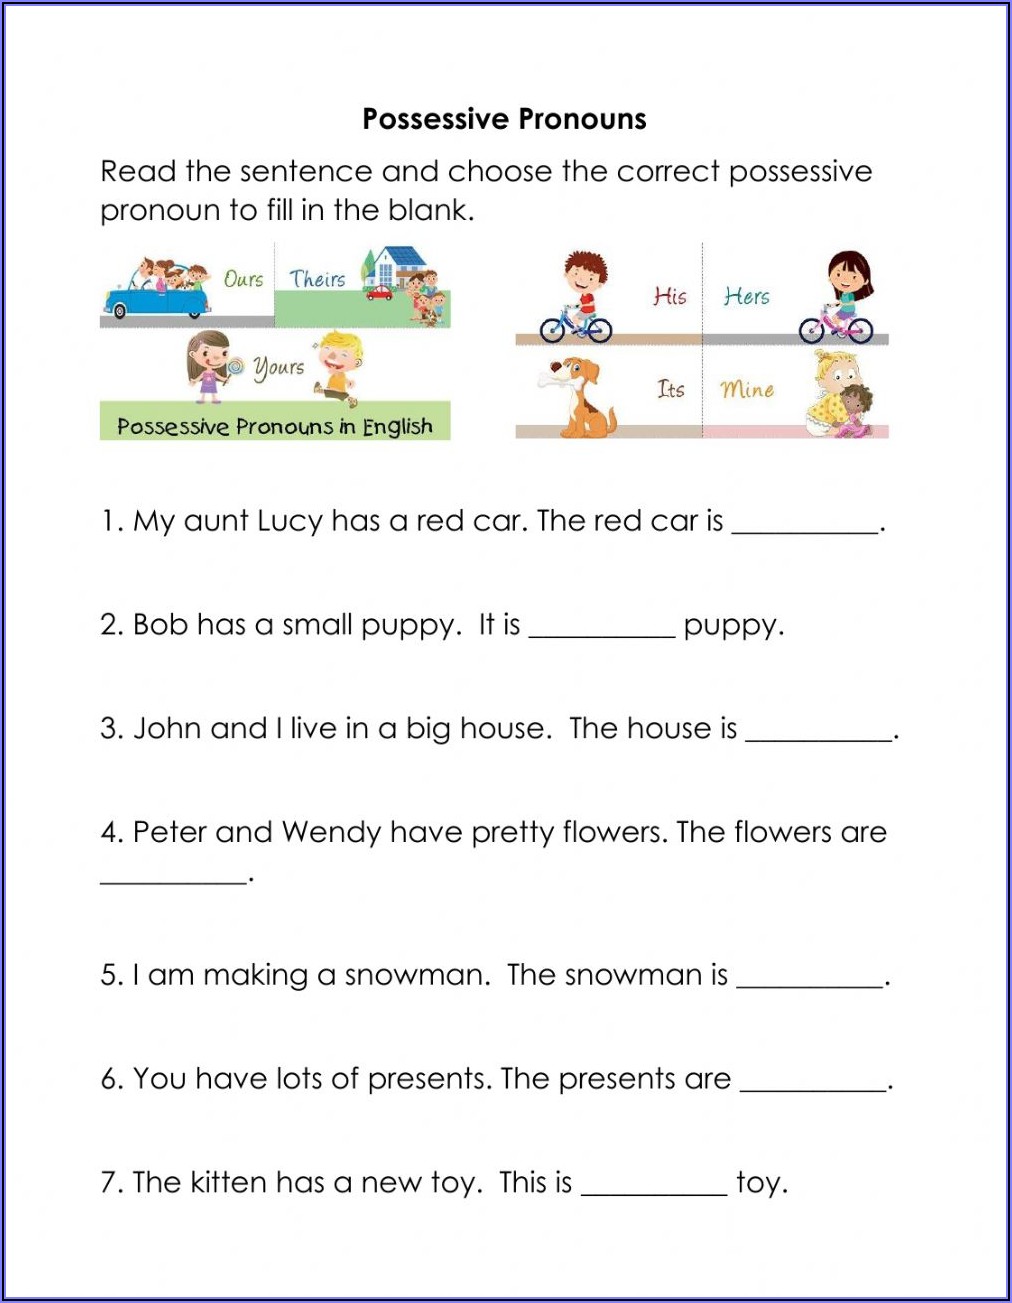 Possessive Pronouns Worksheet For Grade 2